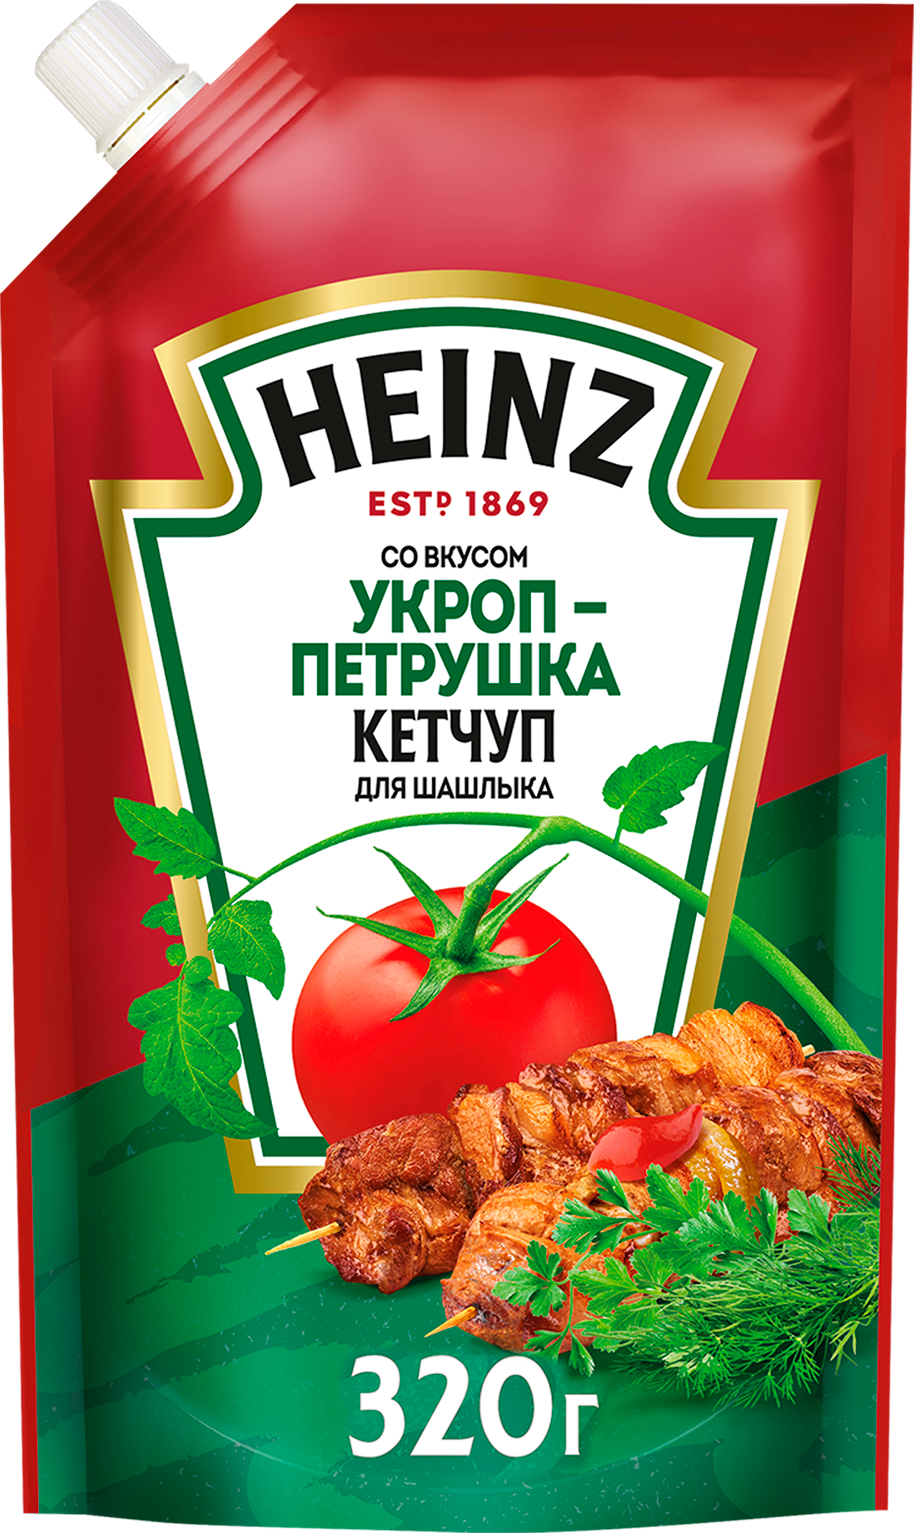 Heinz - кетчуп для шашлыка со вкусом укропа и петрушки, 320 гр, 1/16 — купить в интернет-магазине по низкой цене на Яндекс Маркете